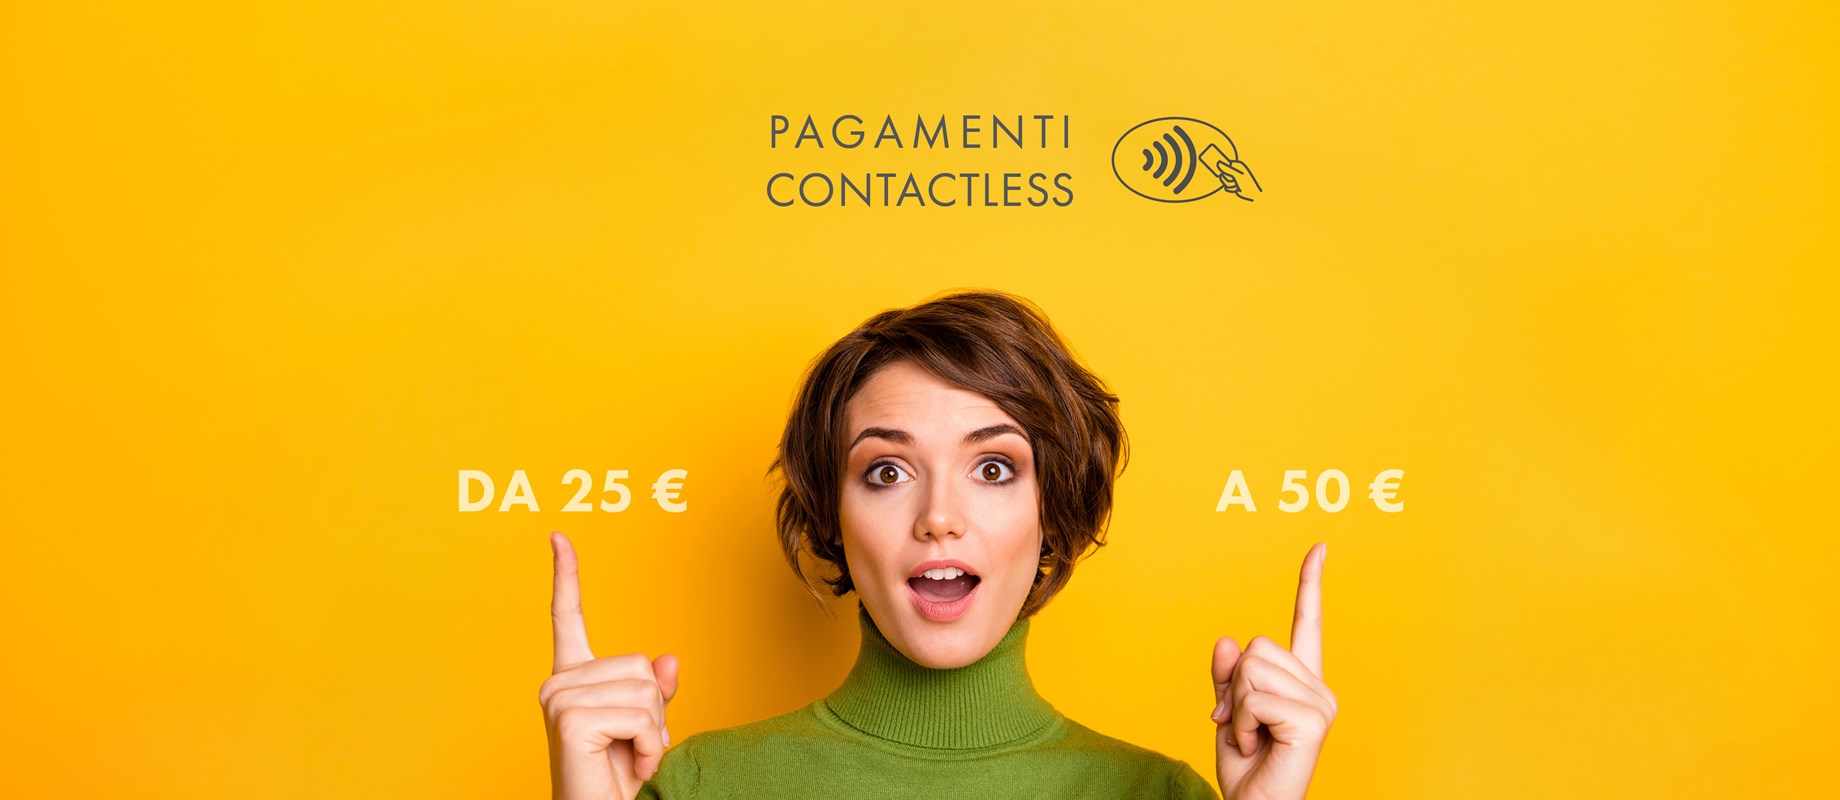 Paga contactless fino a 50 euro e sempre in sicurezza 